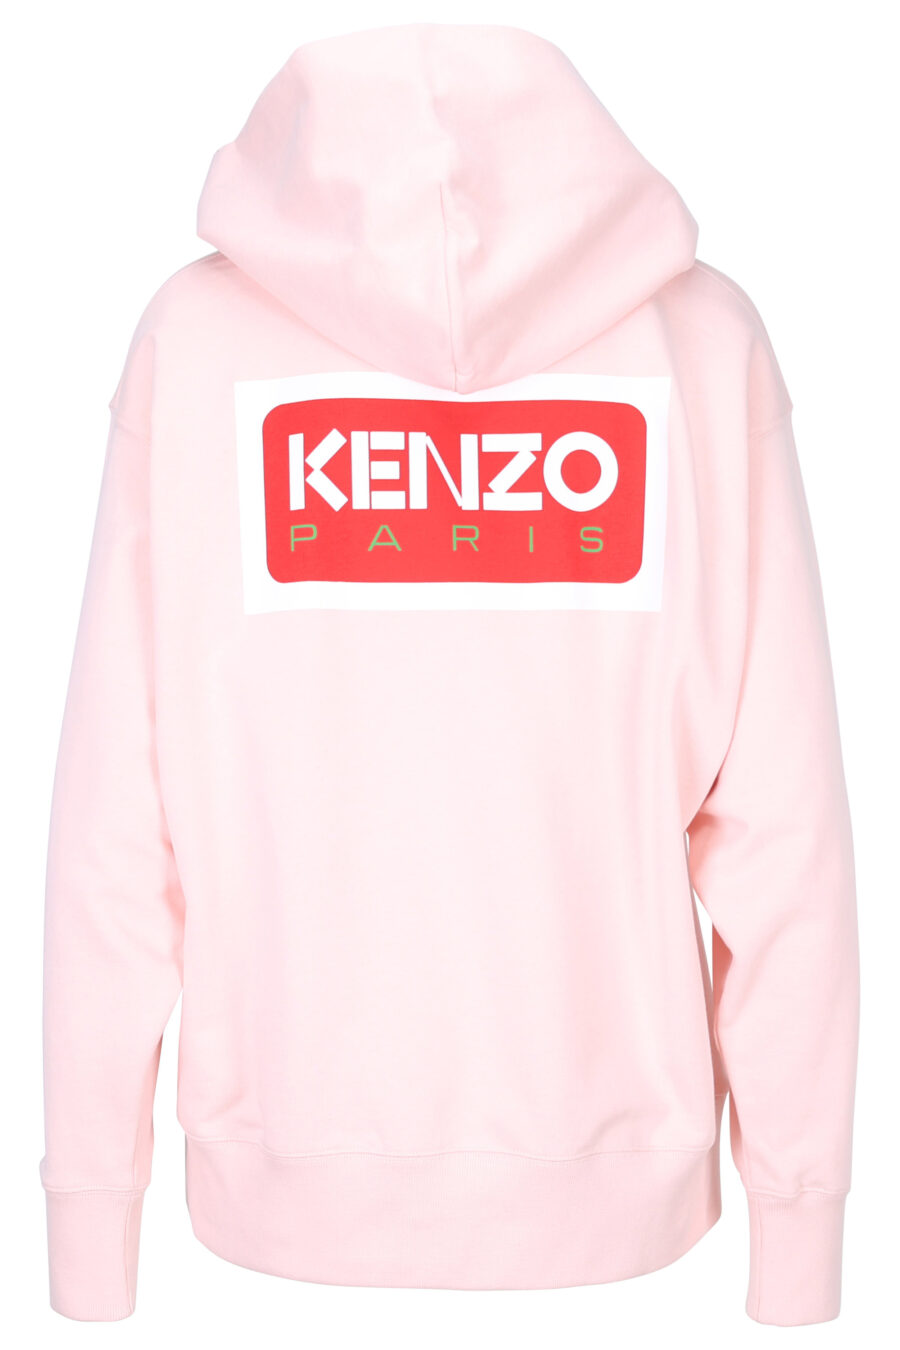 Sweat oversize rose à capuche avec logo "kenzo paris" - 3612230515734 2